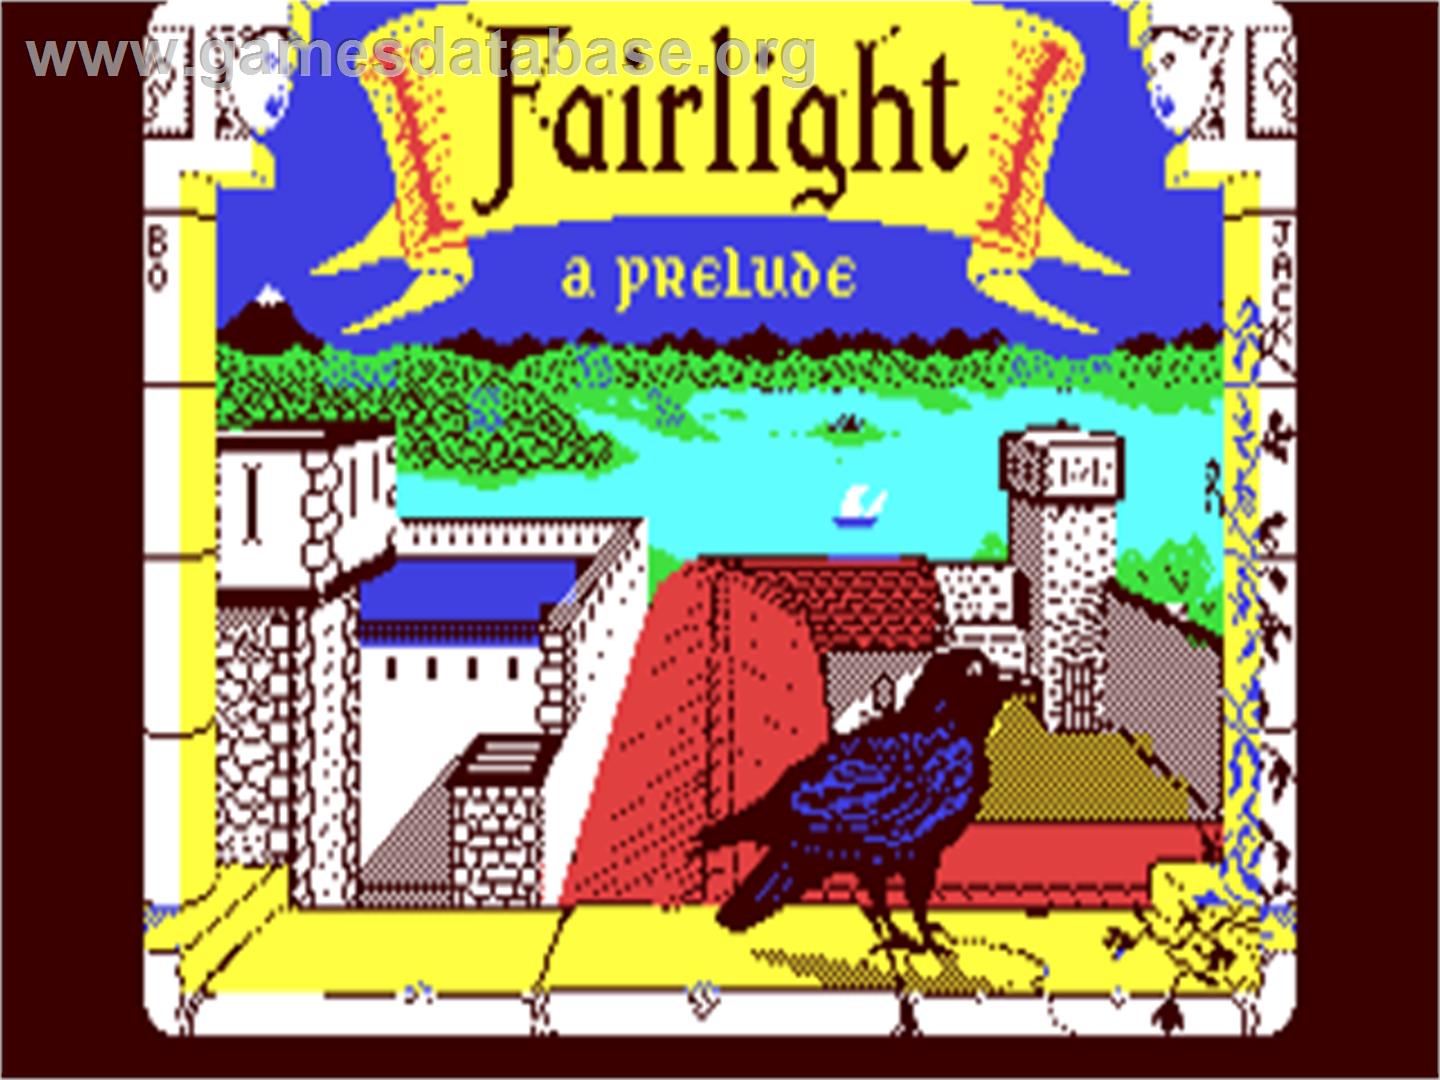 Fairlight: A Prelude - Commodore 64 - Artwork - Title Screen